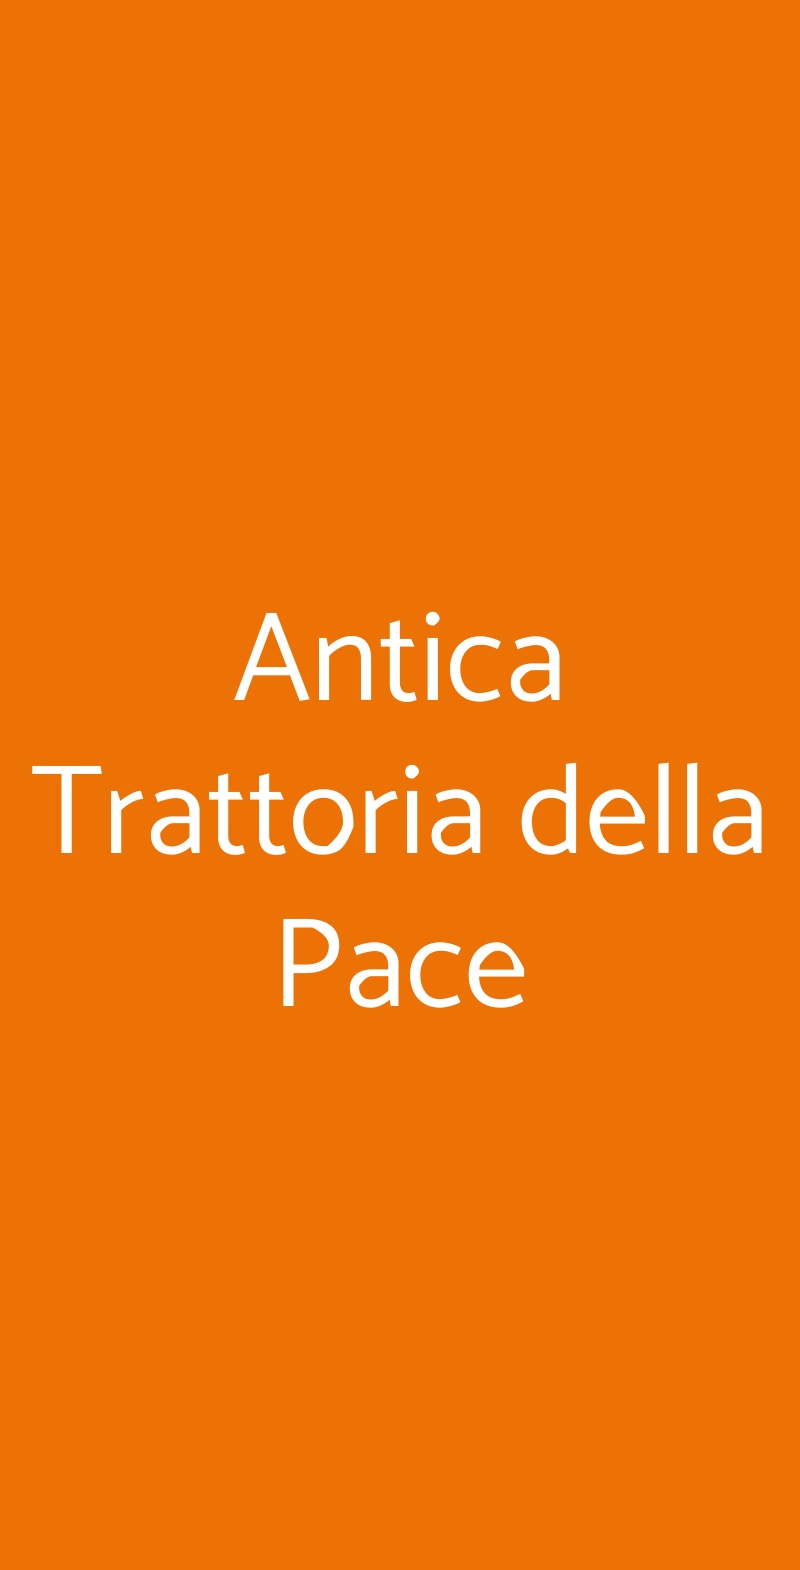 Antica Trattoria della Pace Roma menù 1 pagina